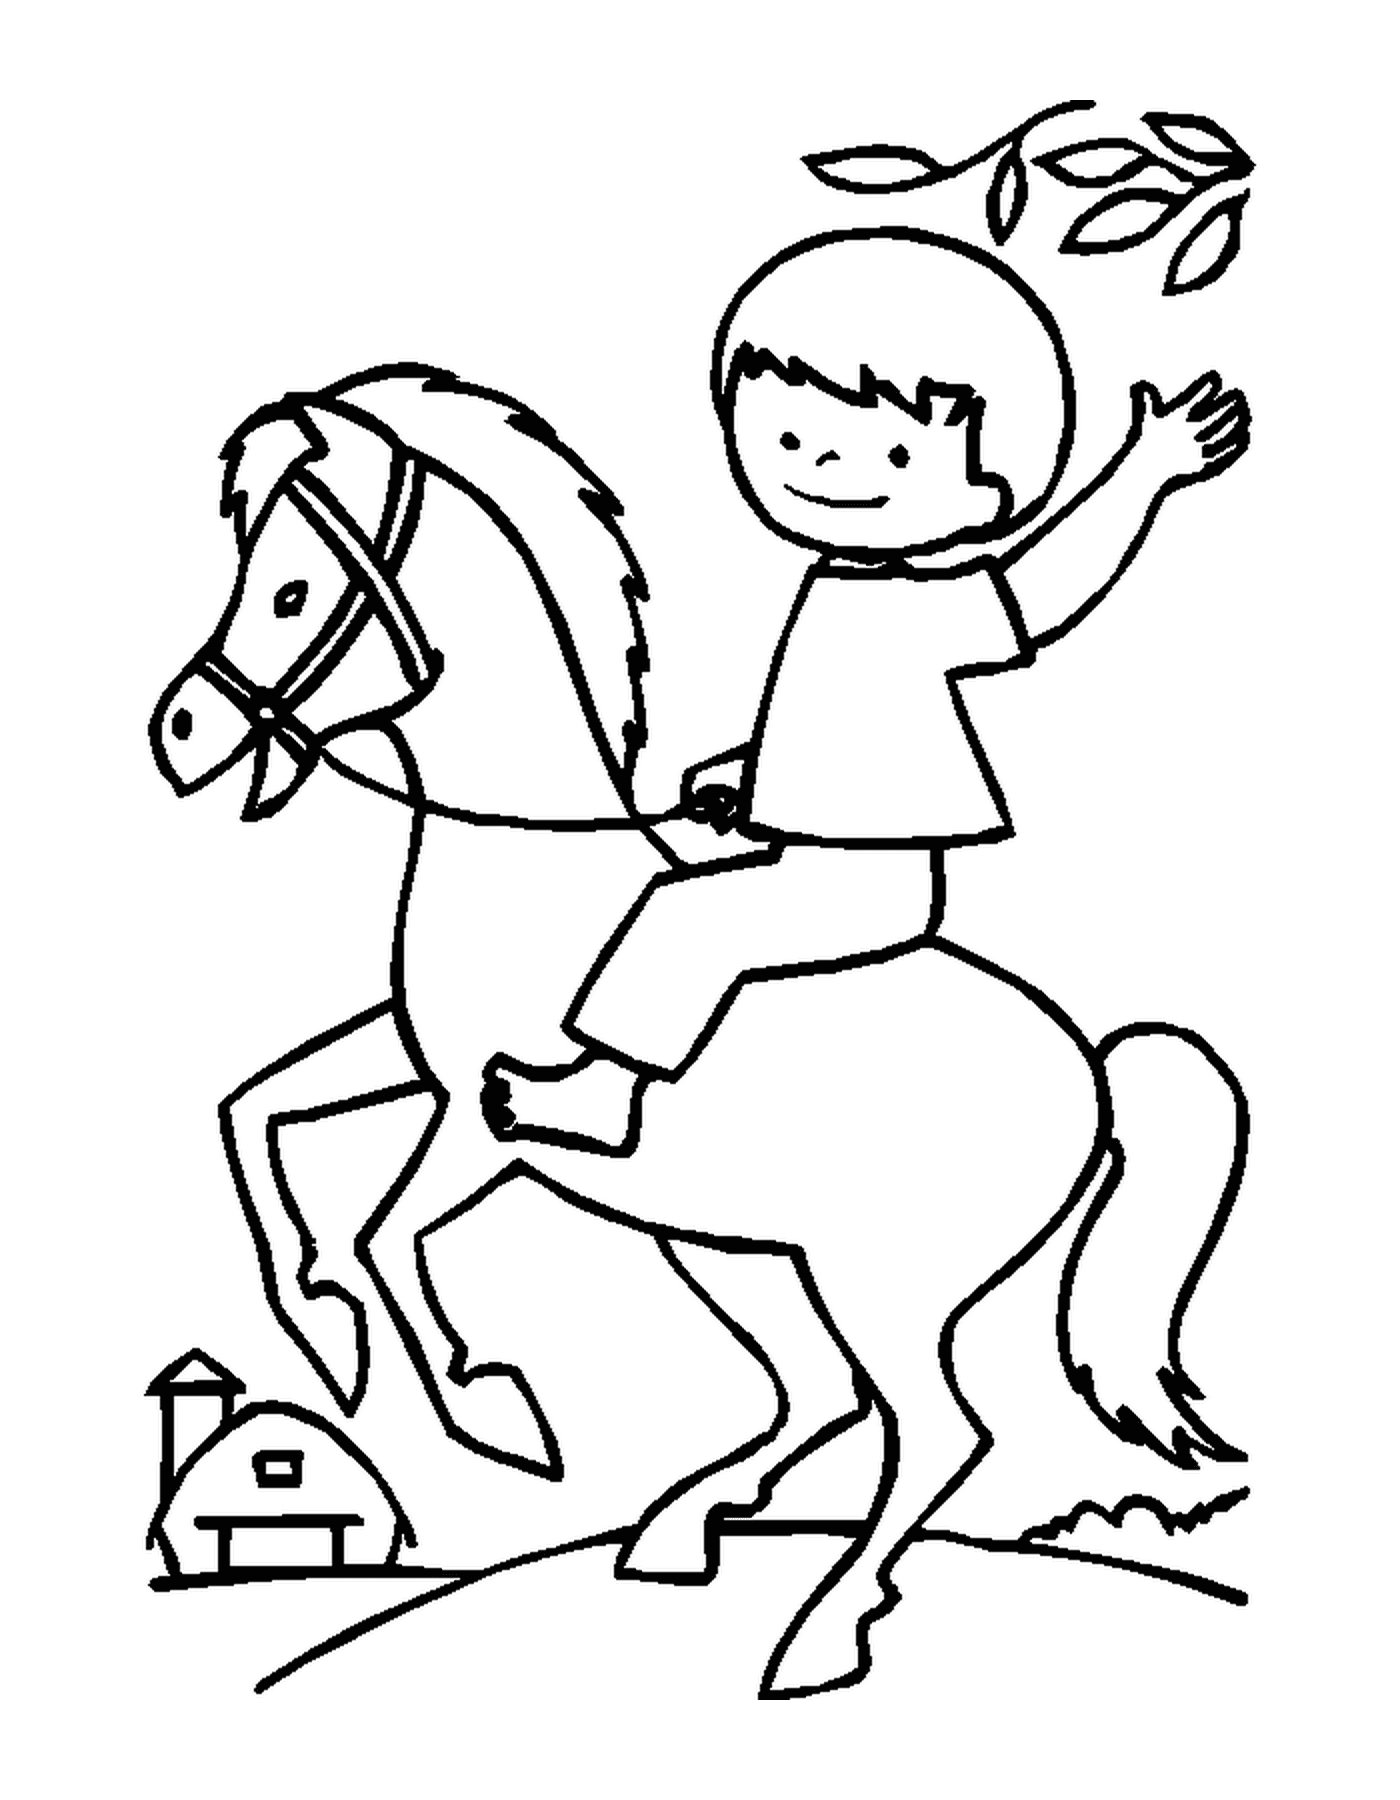   Enfant chevauchant joyeusement son cheval en tenant les rênes 